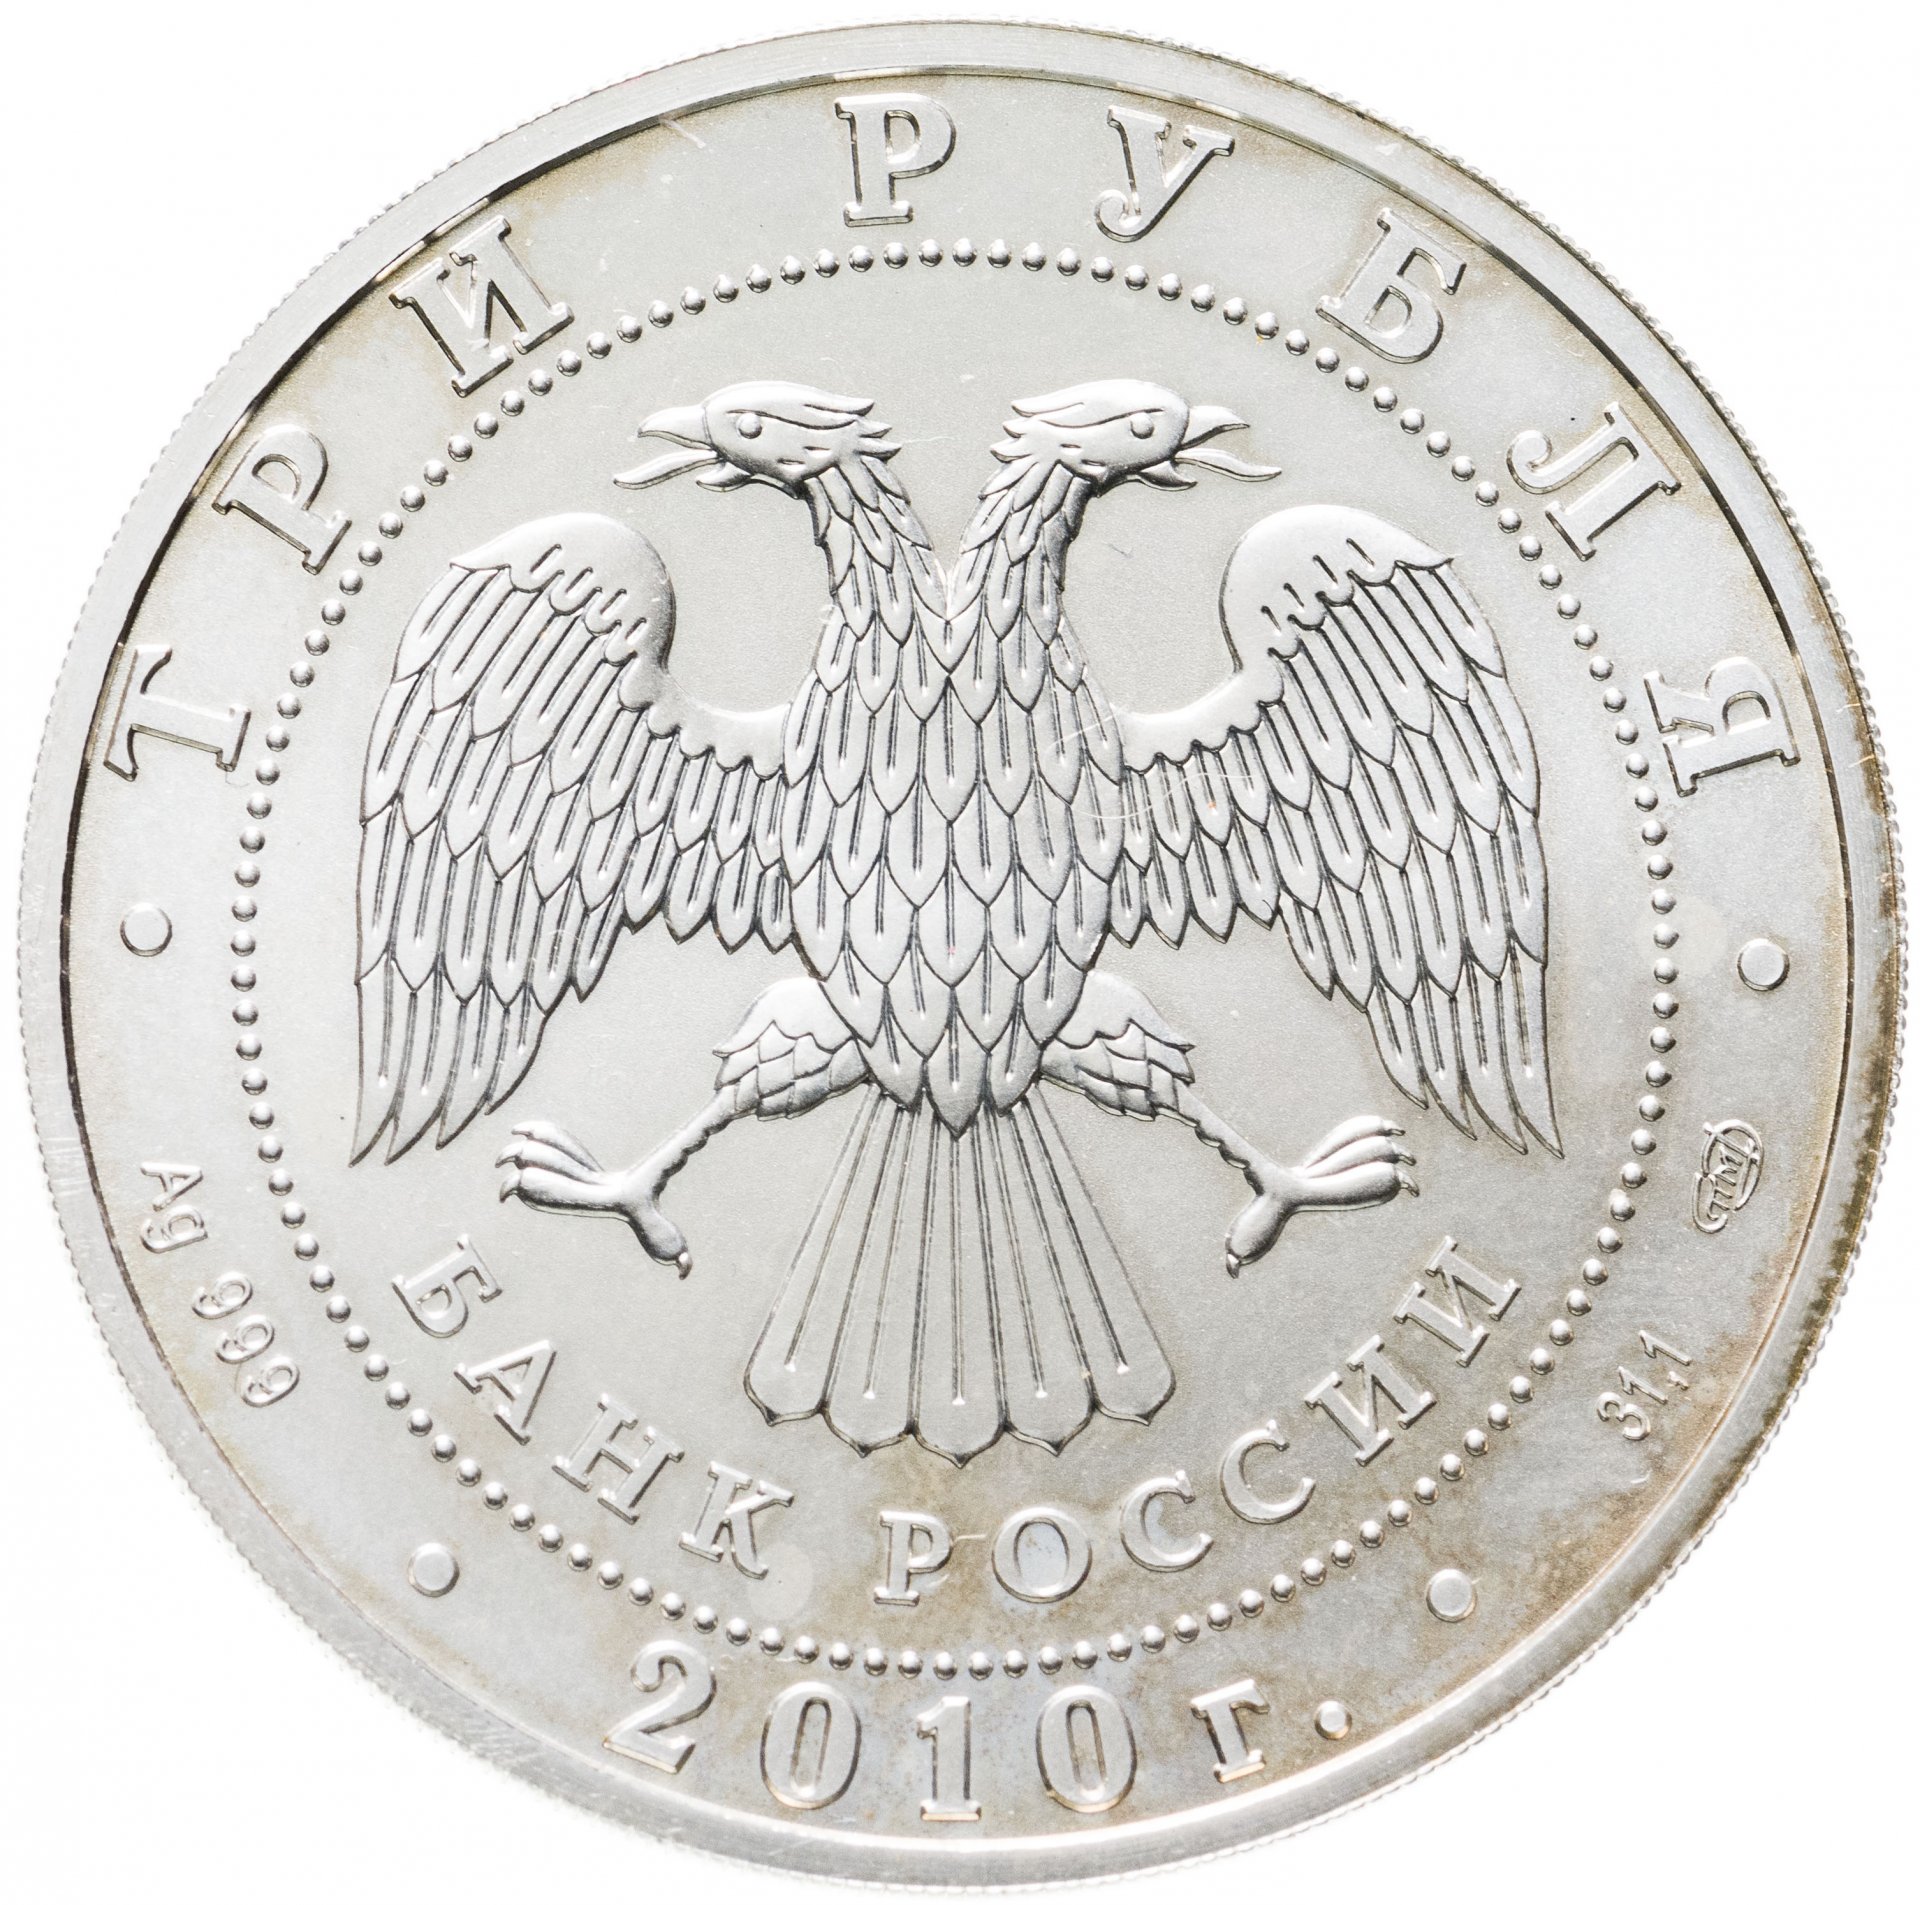 Продать монеты 5 рублей. СПМД на монетах. 5 Рублей. Монета 5 рублей. 5 Рублей 2013.